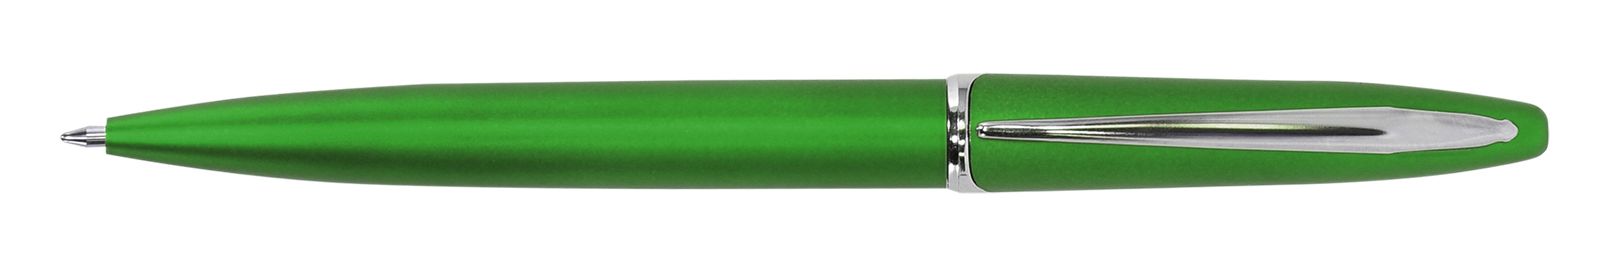 Ручка для логотипа шариковая автоматическая INFORMAT INSPIRATION 0,7 мм, синяя, зеленый корпус